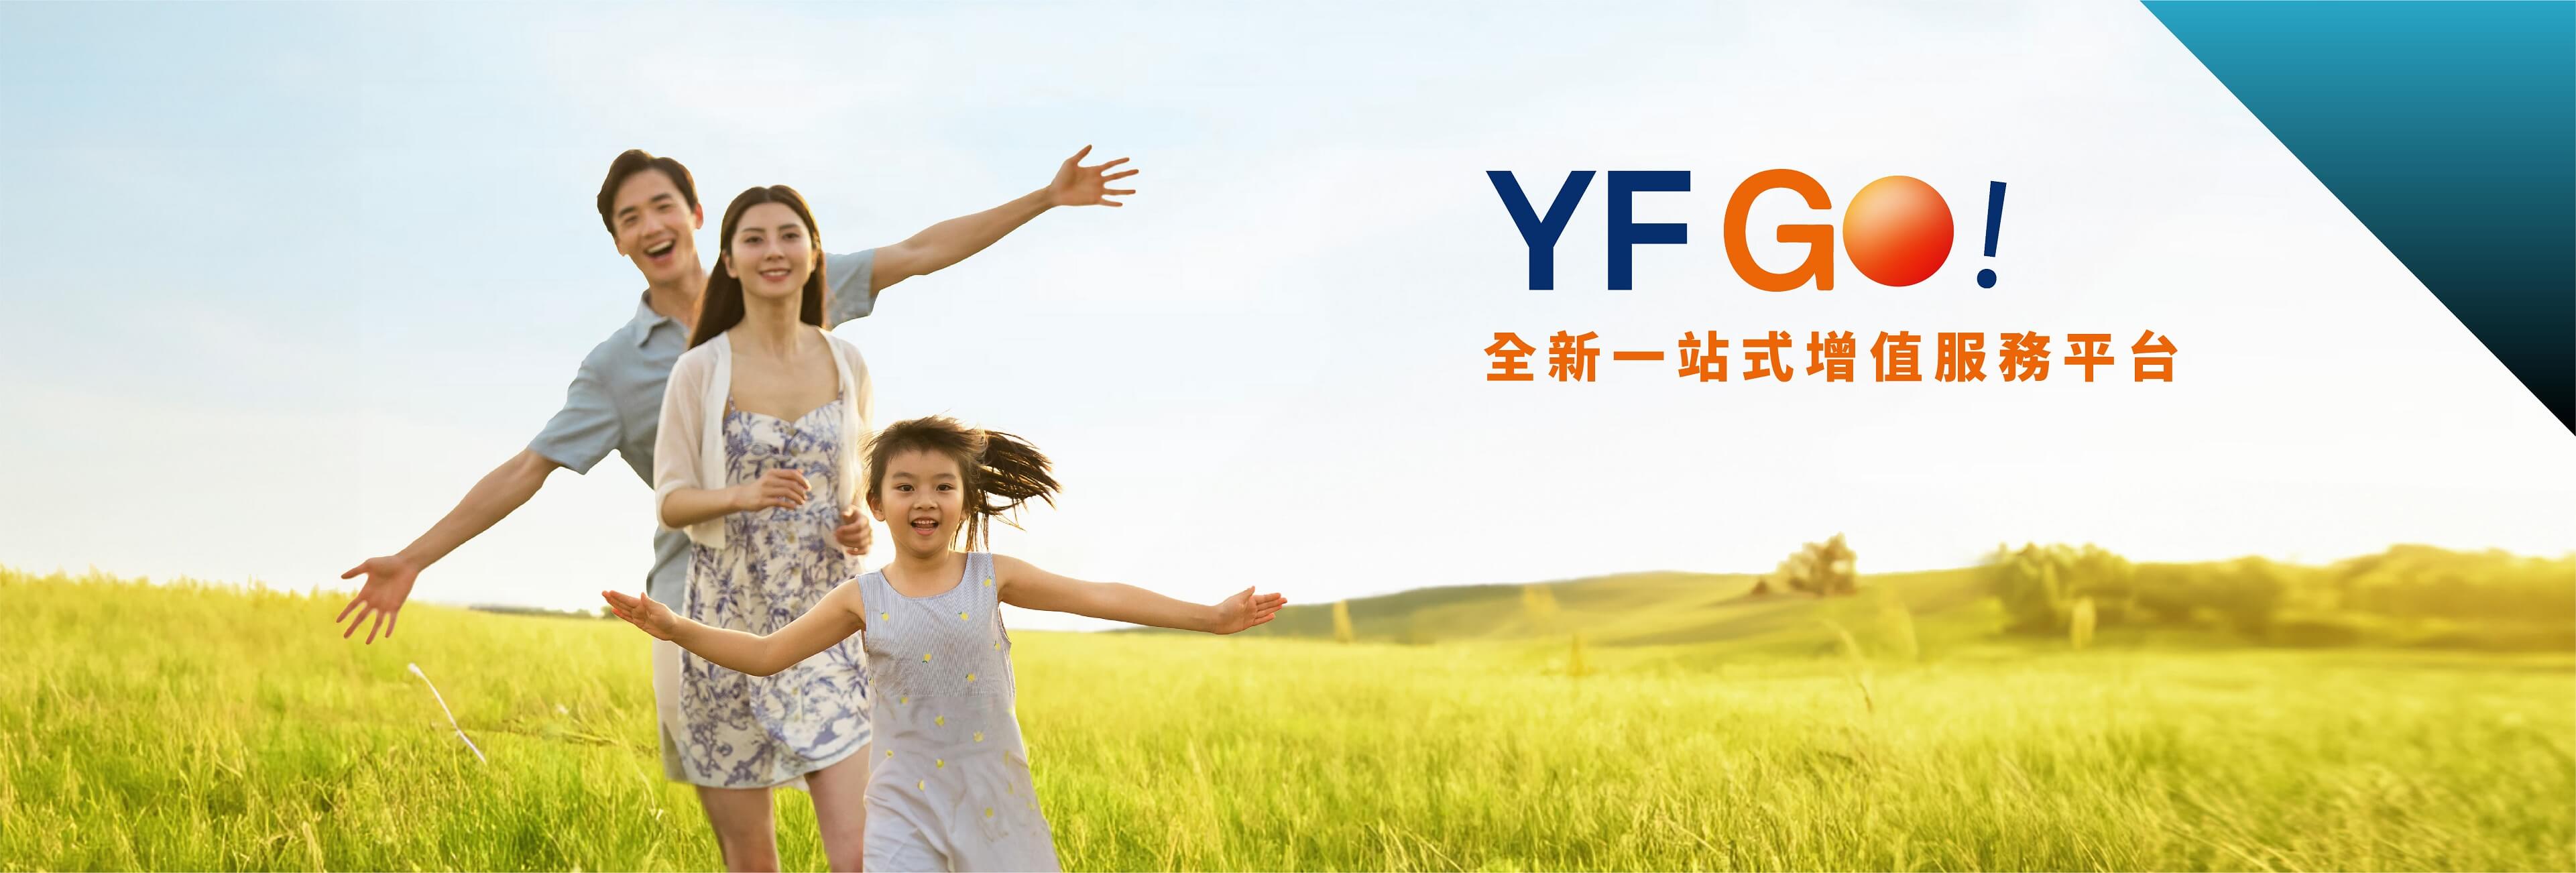 YF GO! - 全新一站式增值服務平台 